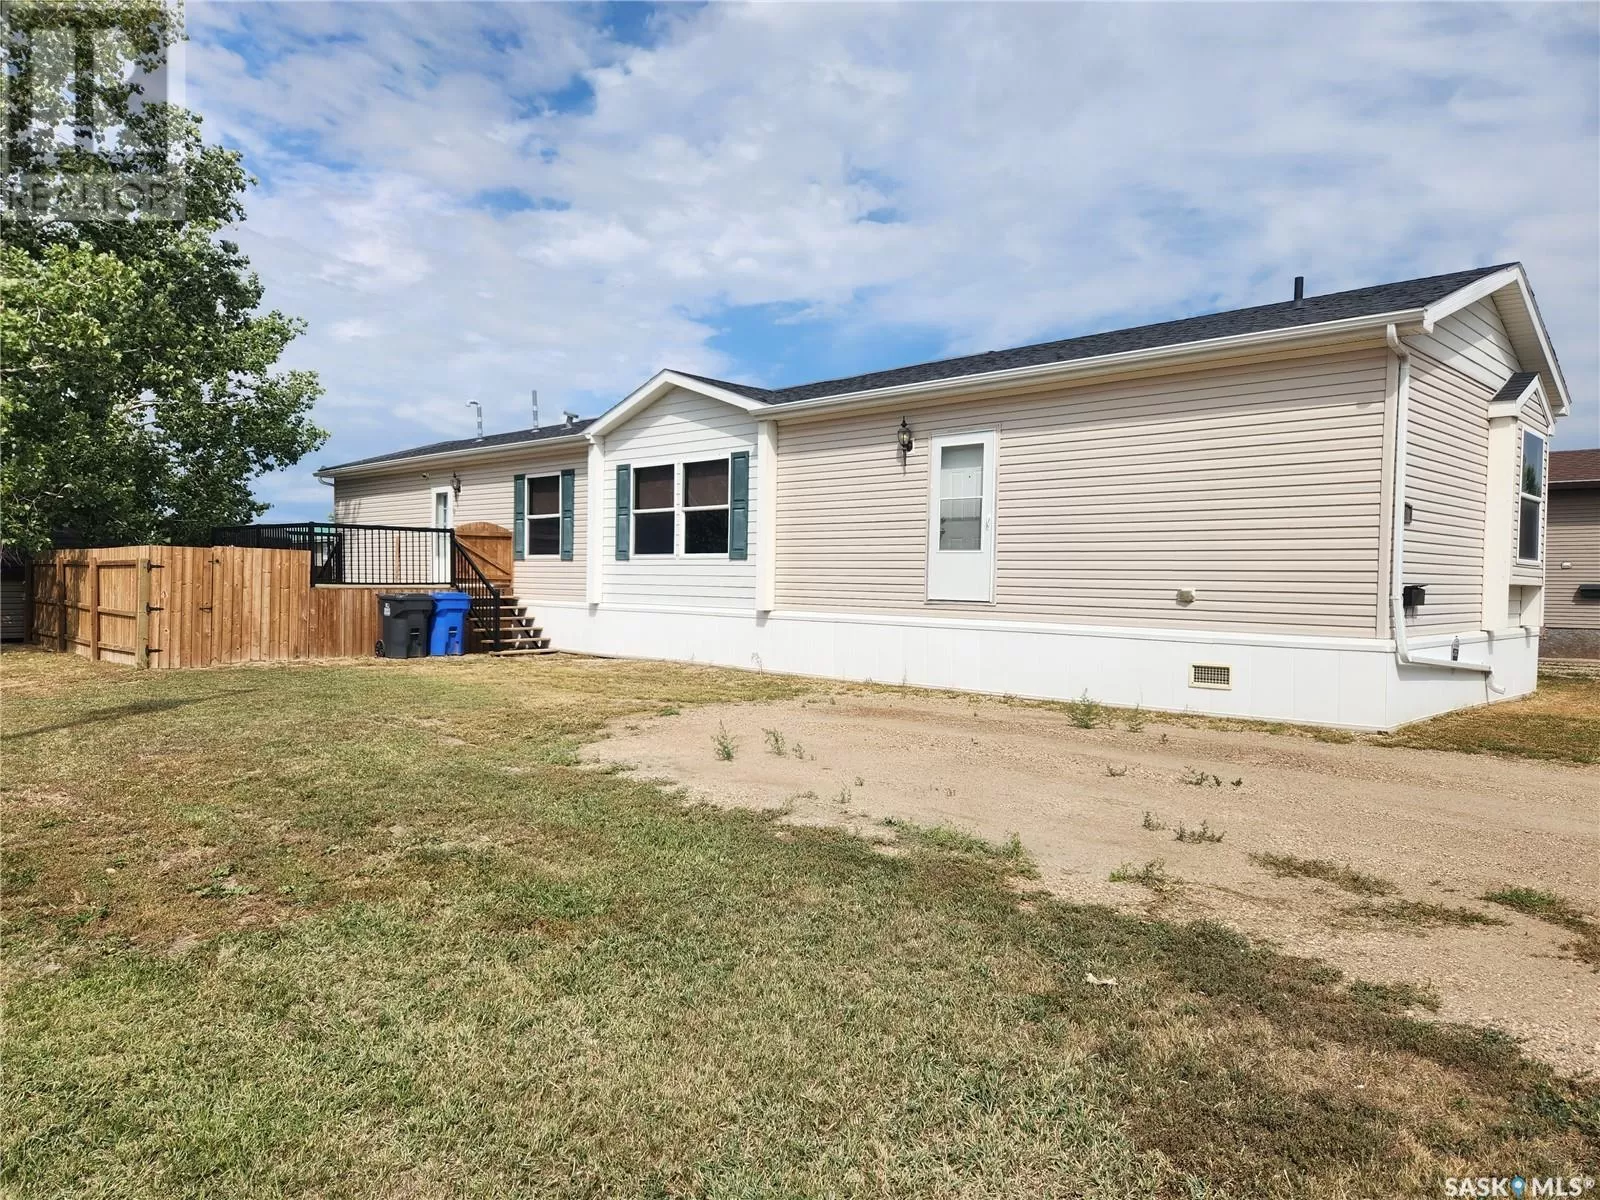 Mobile Home for rent: 43 106 1st Avenue Sw, Weyburn, Saskatchewan S4H 2J1